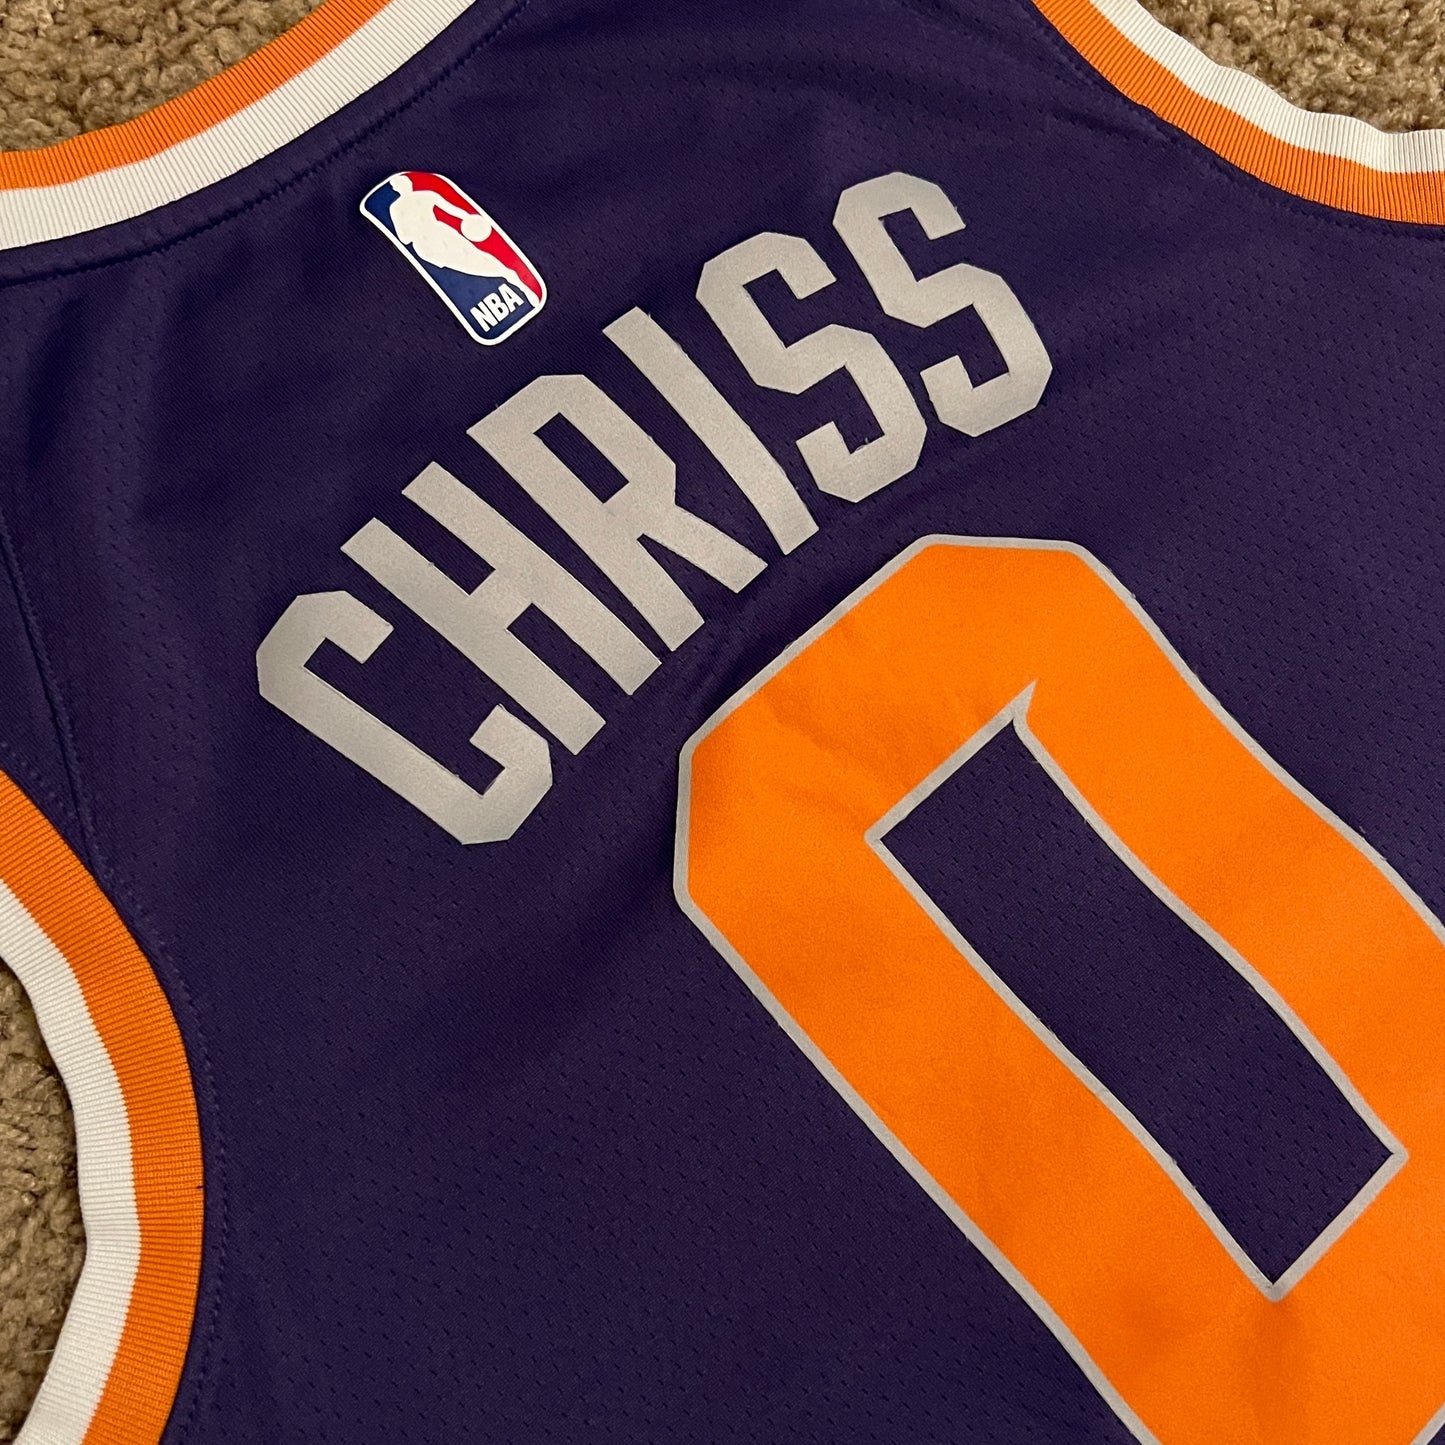 Marquese Chriss Phoenix Suns Nike Jersey - M